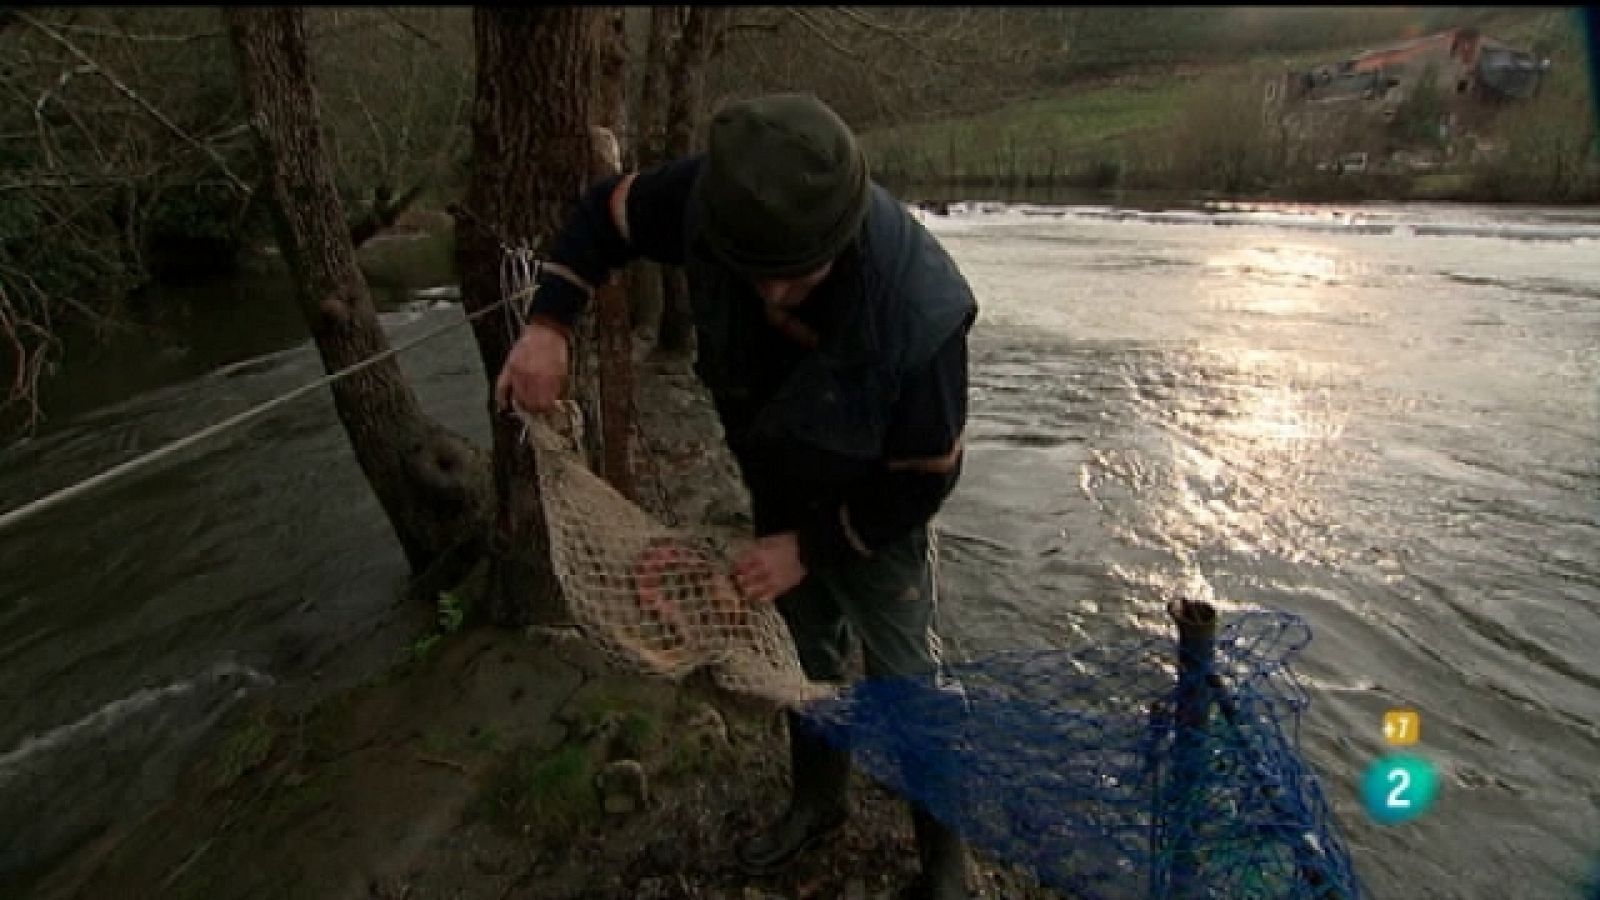 Jara y sedal - La pesca tradicional de la lamprea en Galicia